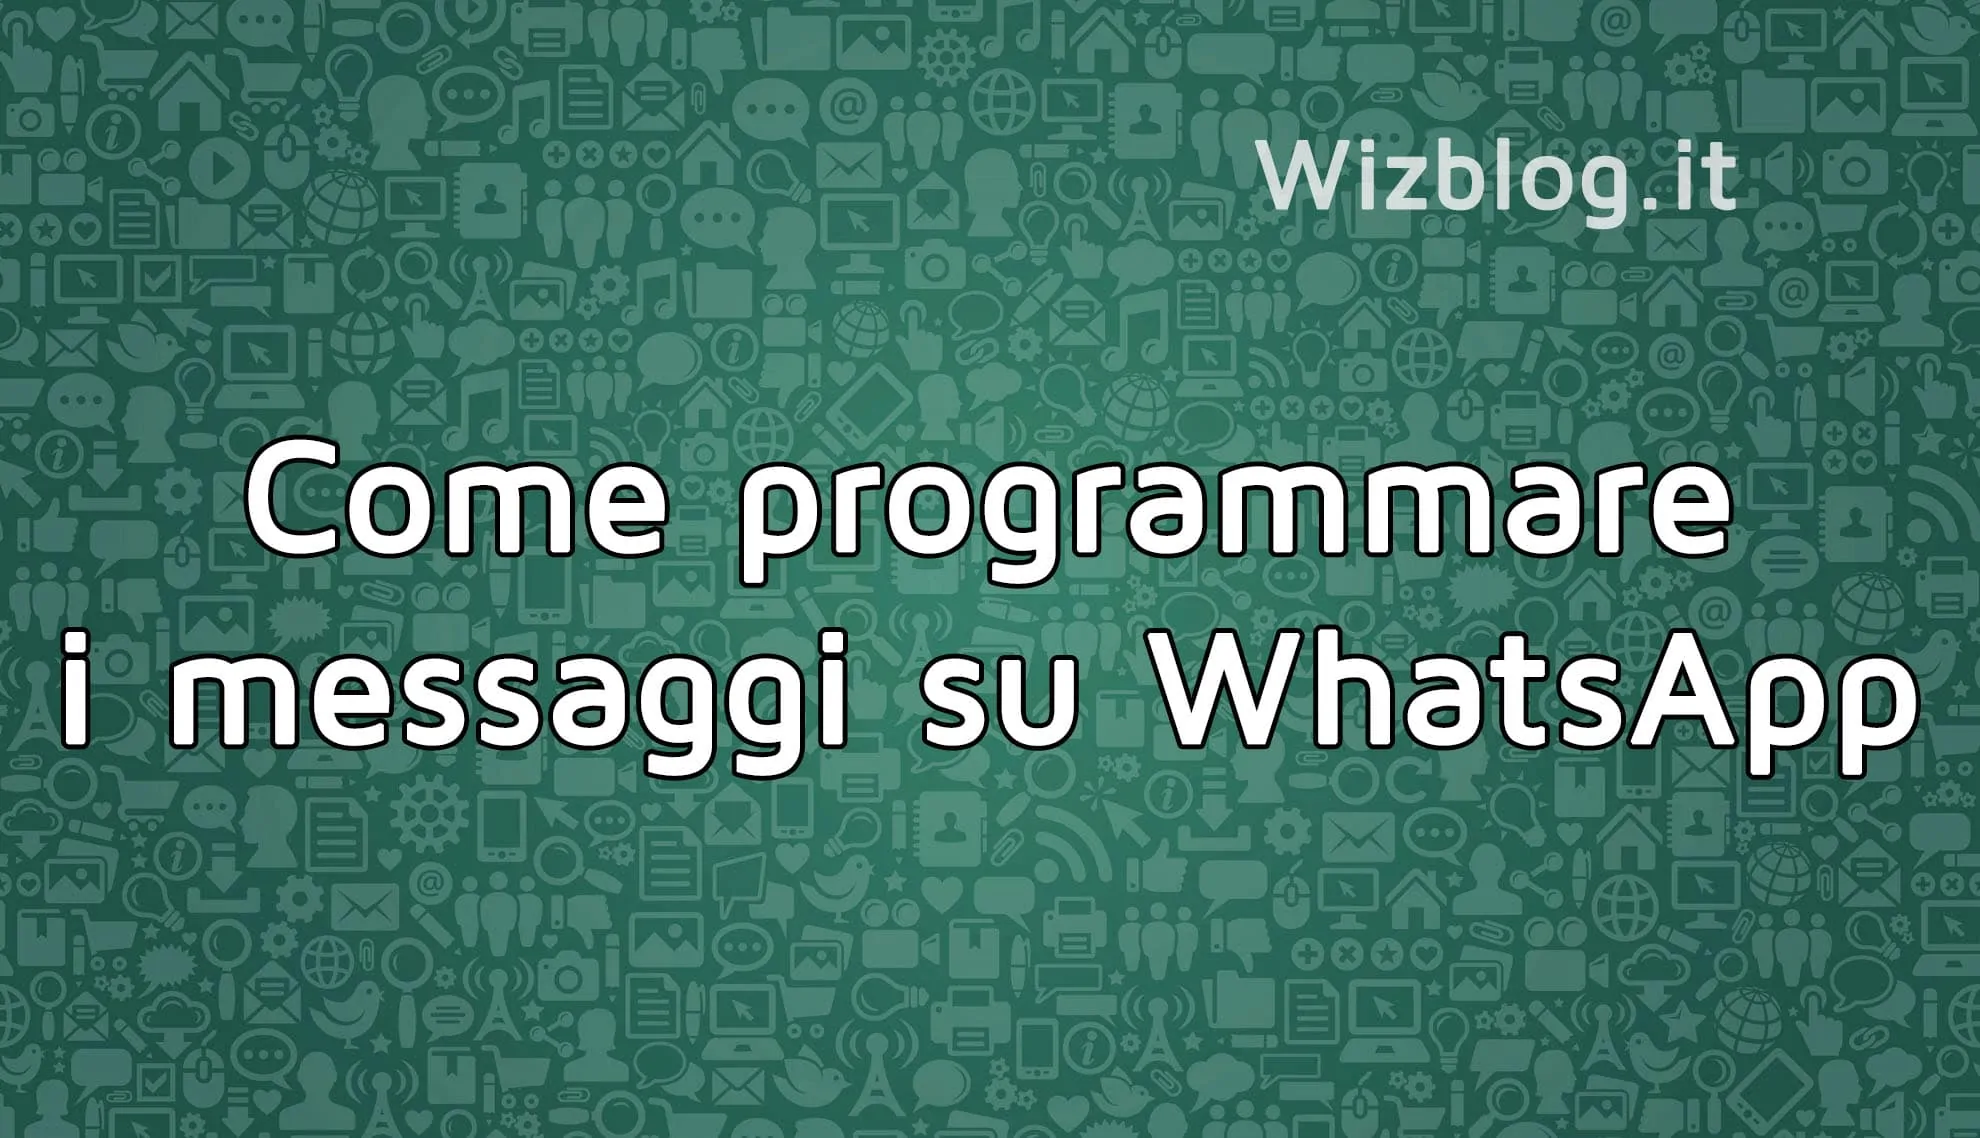 Come programmare i messaggi su WhatsApp